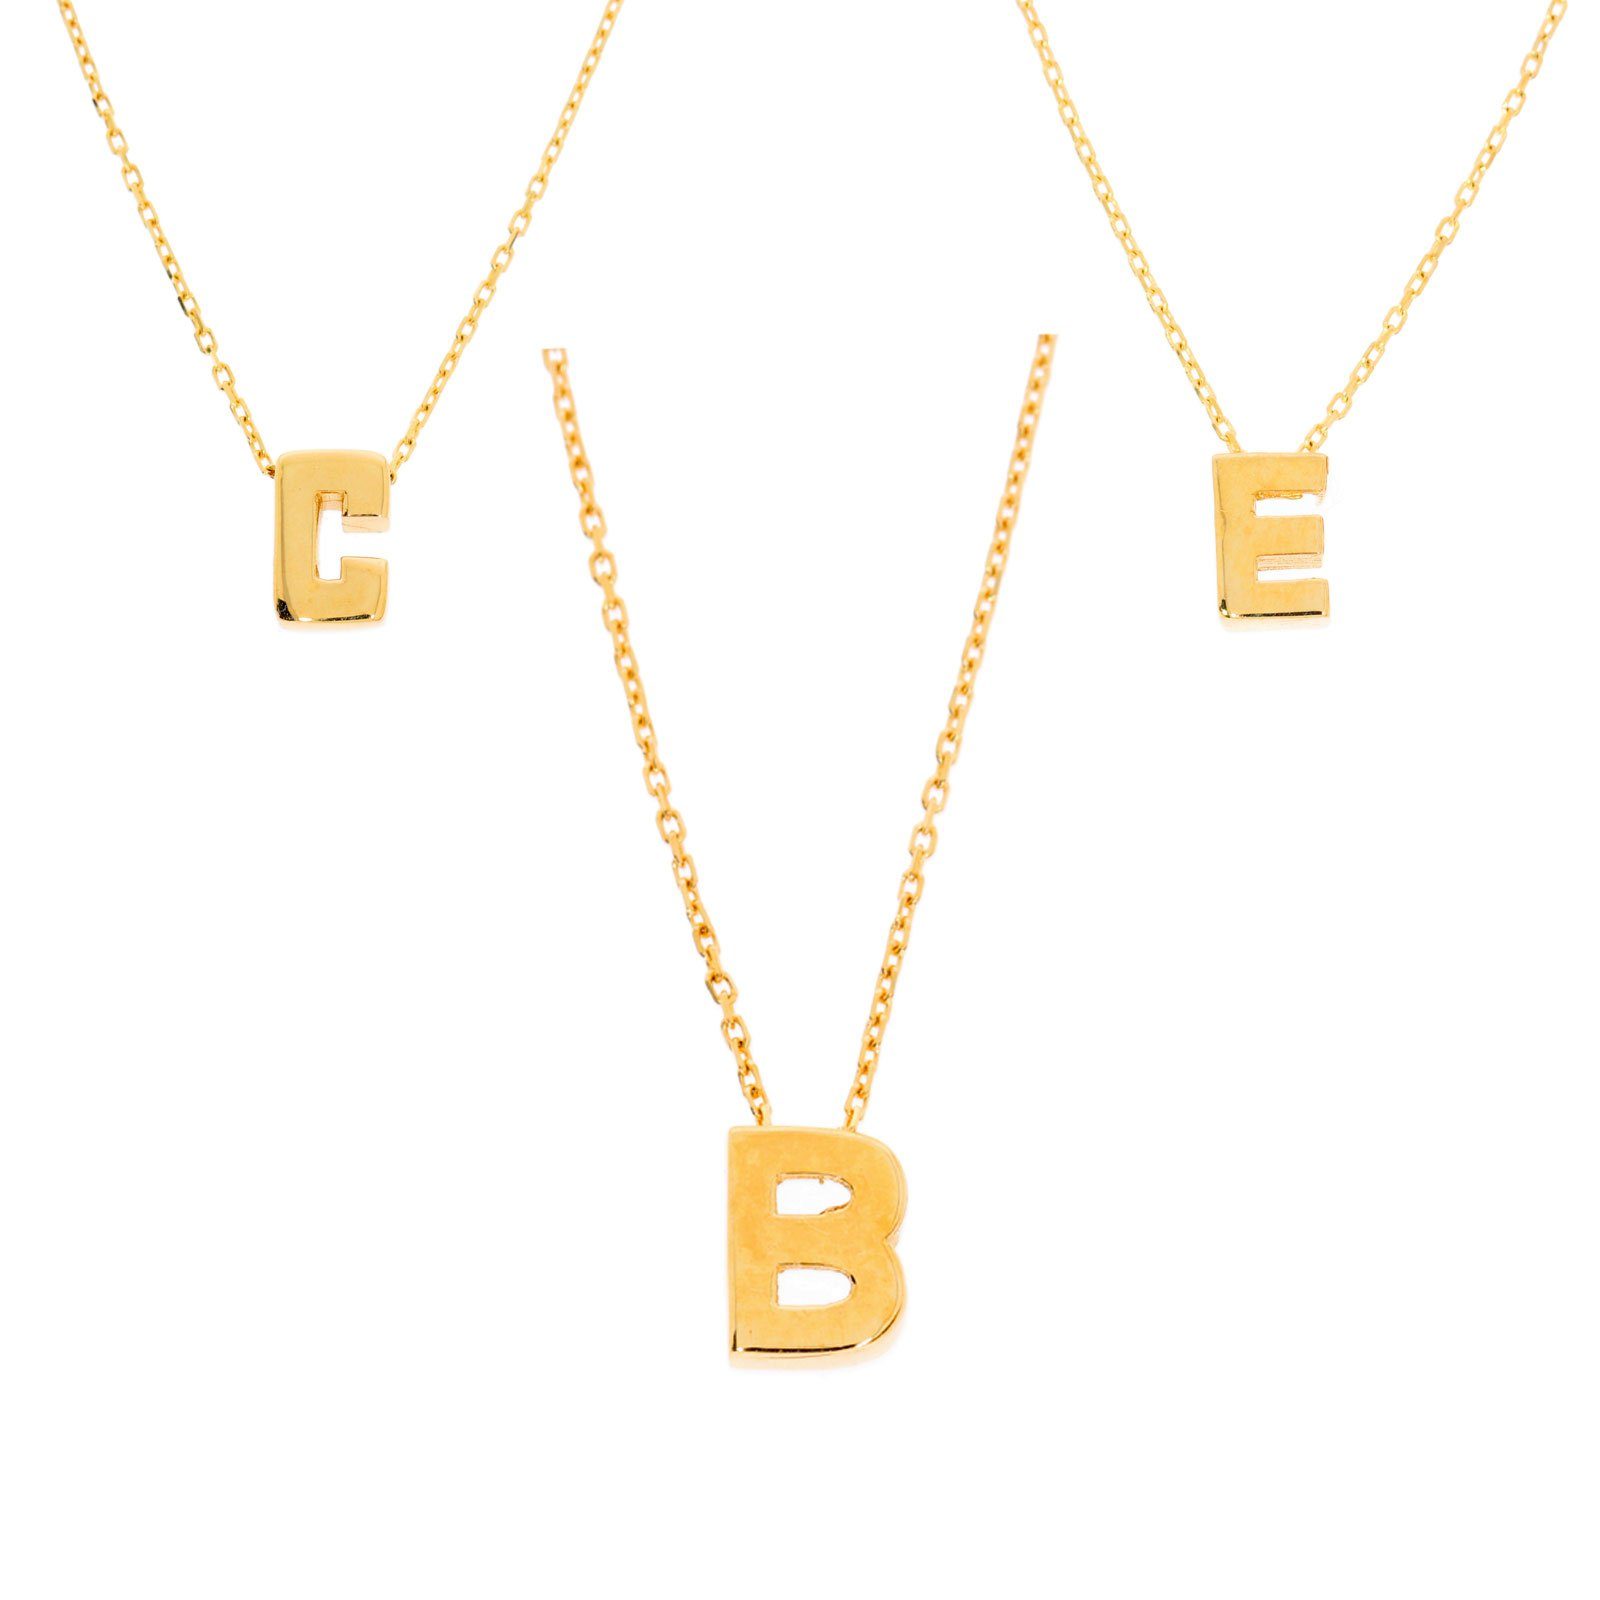 Herren Schmuck Stella-Jewellery Kette mit Anhänger 585er Gold Halskette mit Buchstaben Anhänger (inkl. Etui), Buchstaben Anhänge